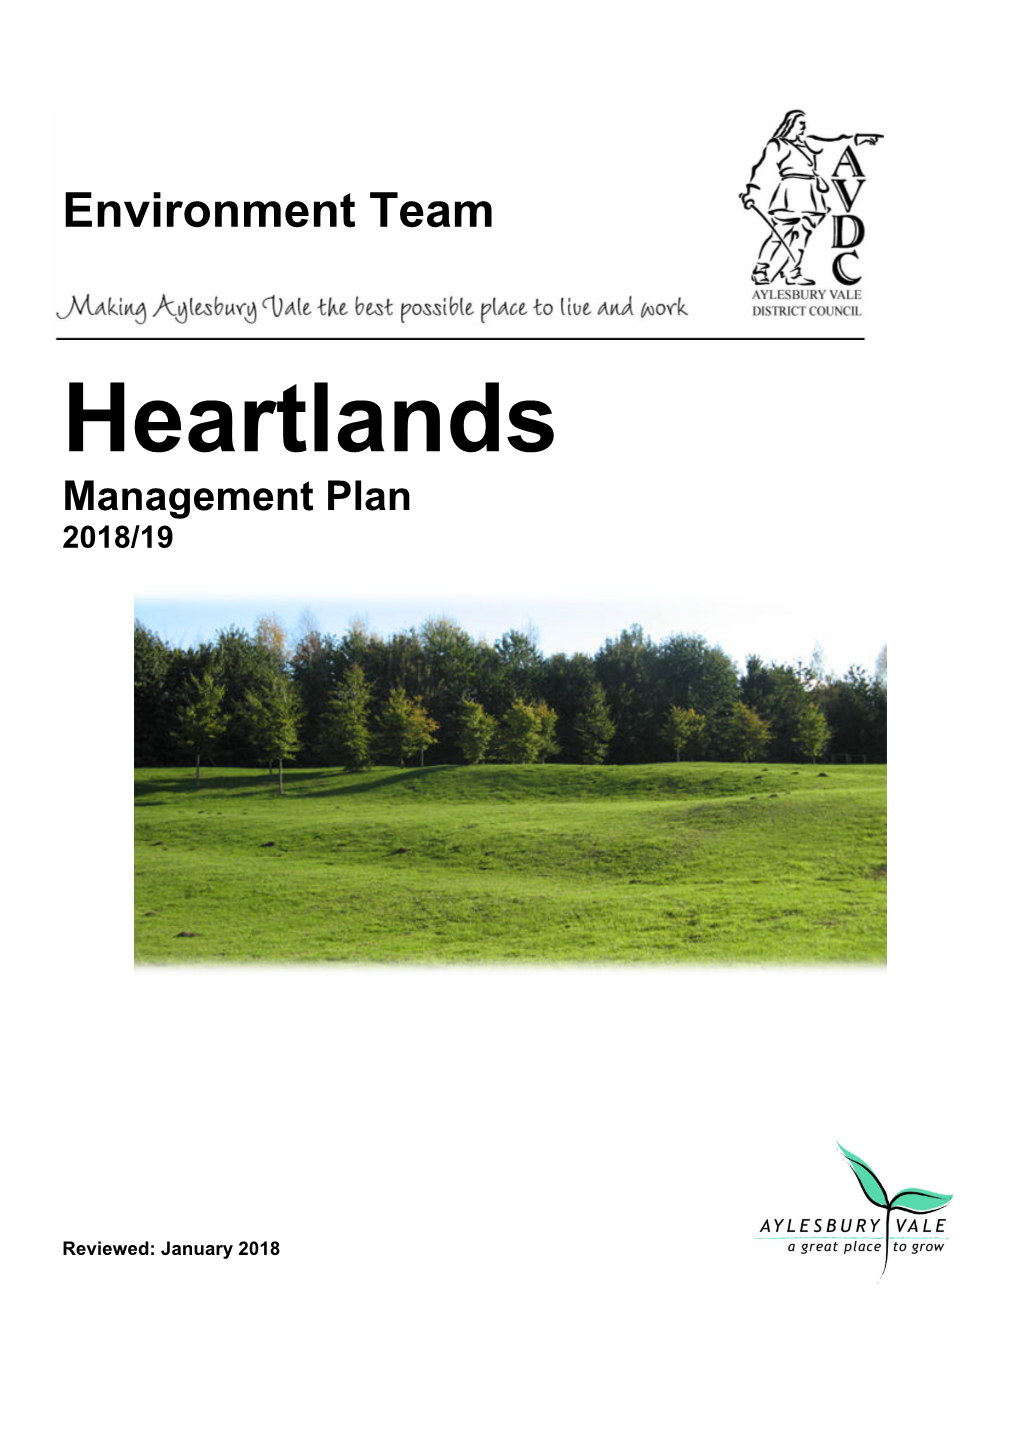 Heartlands Management Plan 2018/19